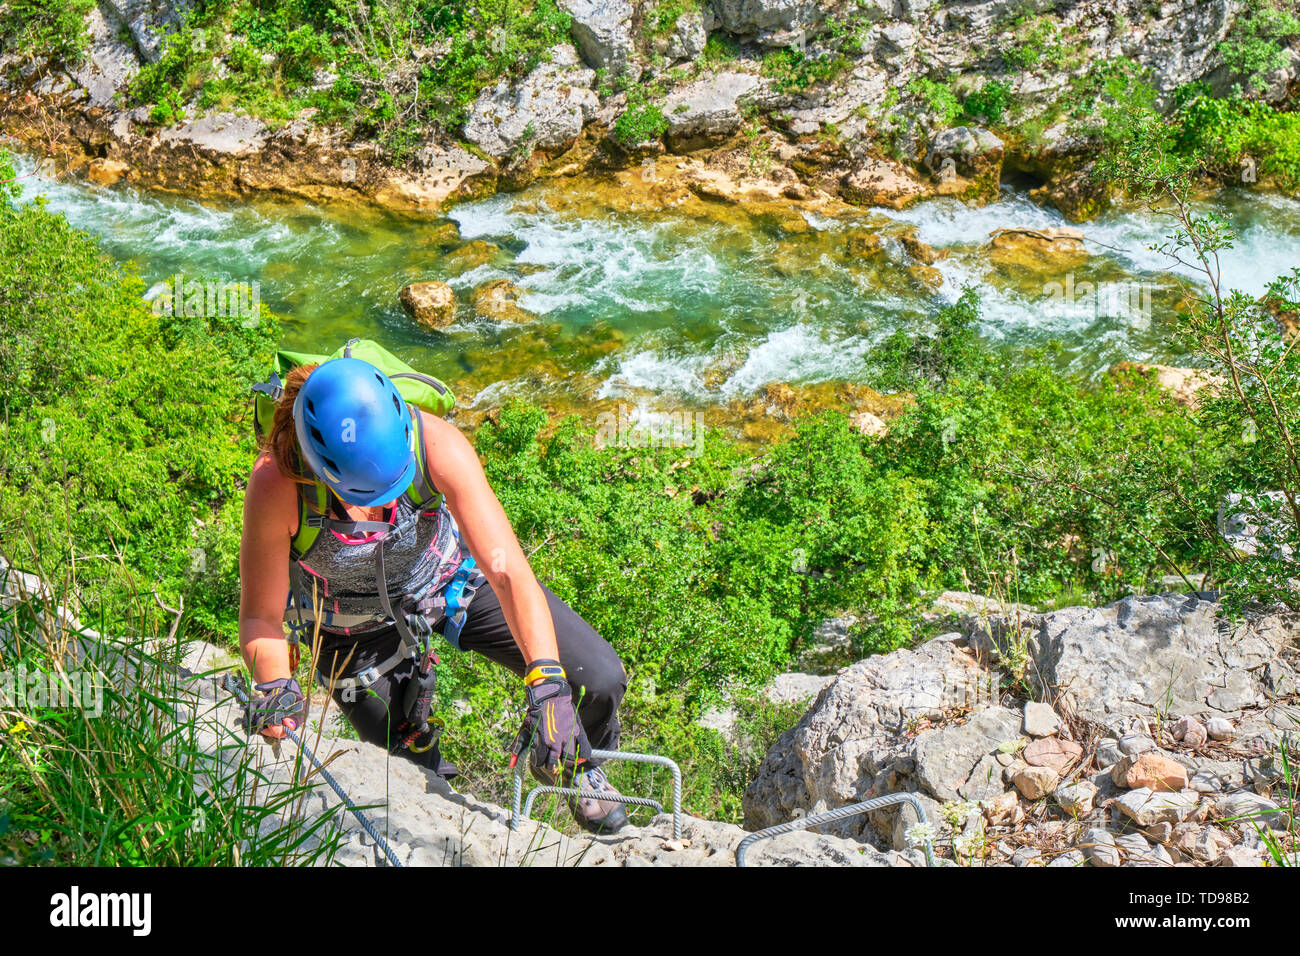 Via ferrata in Croazia, Cikola Canyon. Giovane donna salendo una media difficoltà klettersteig, con colori turchese del fiume Cikola in background. Foto Stock